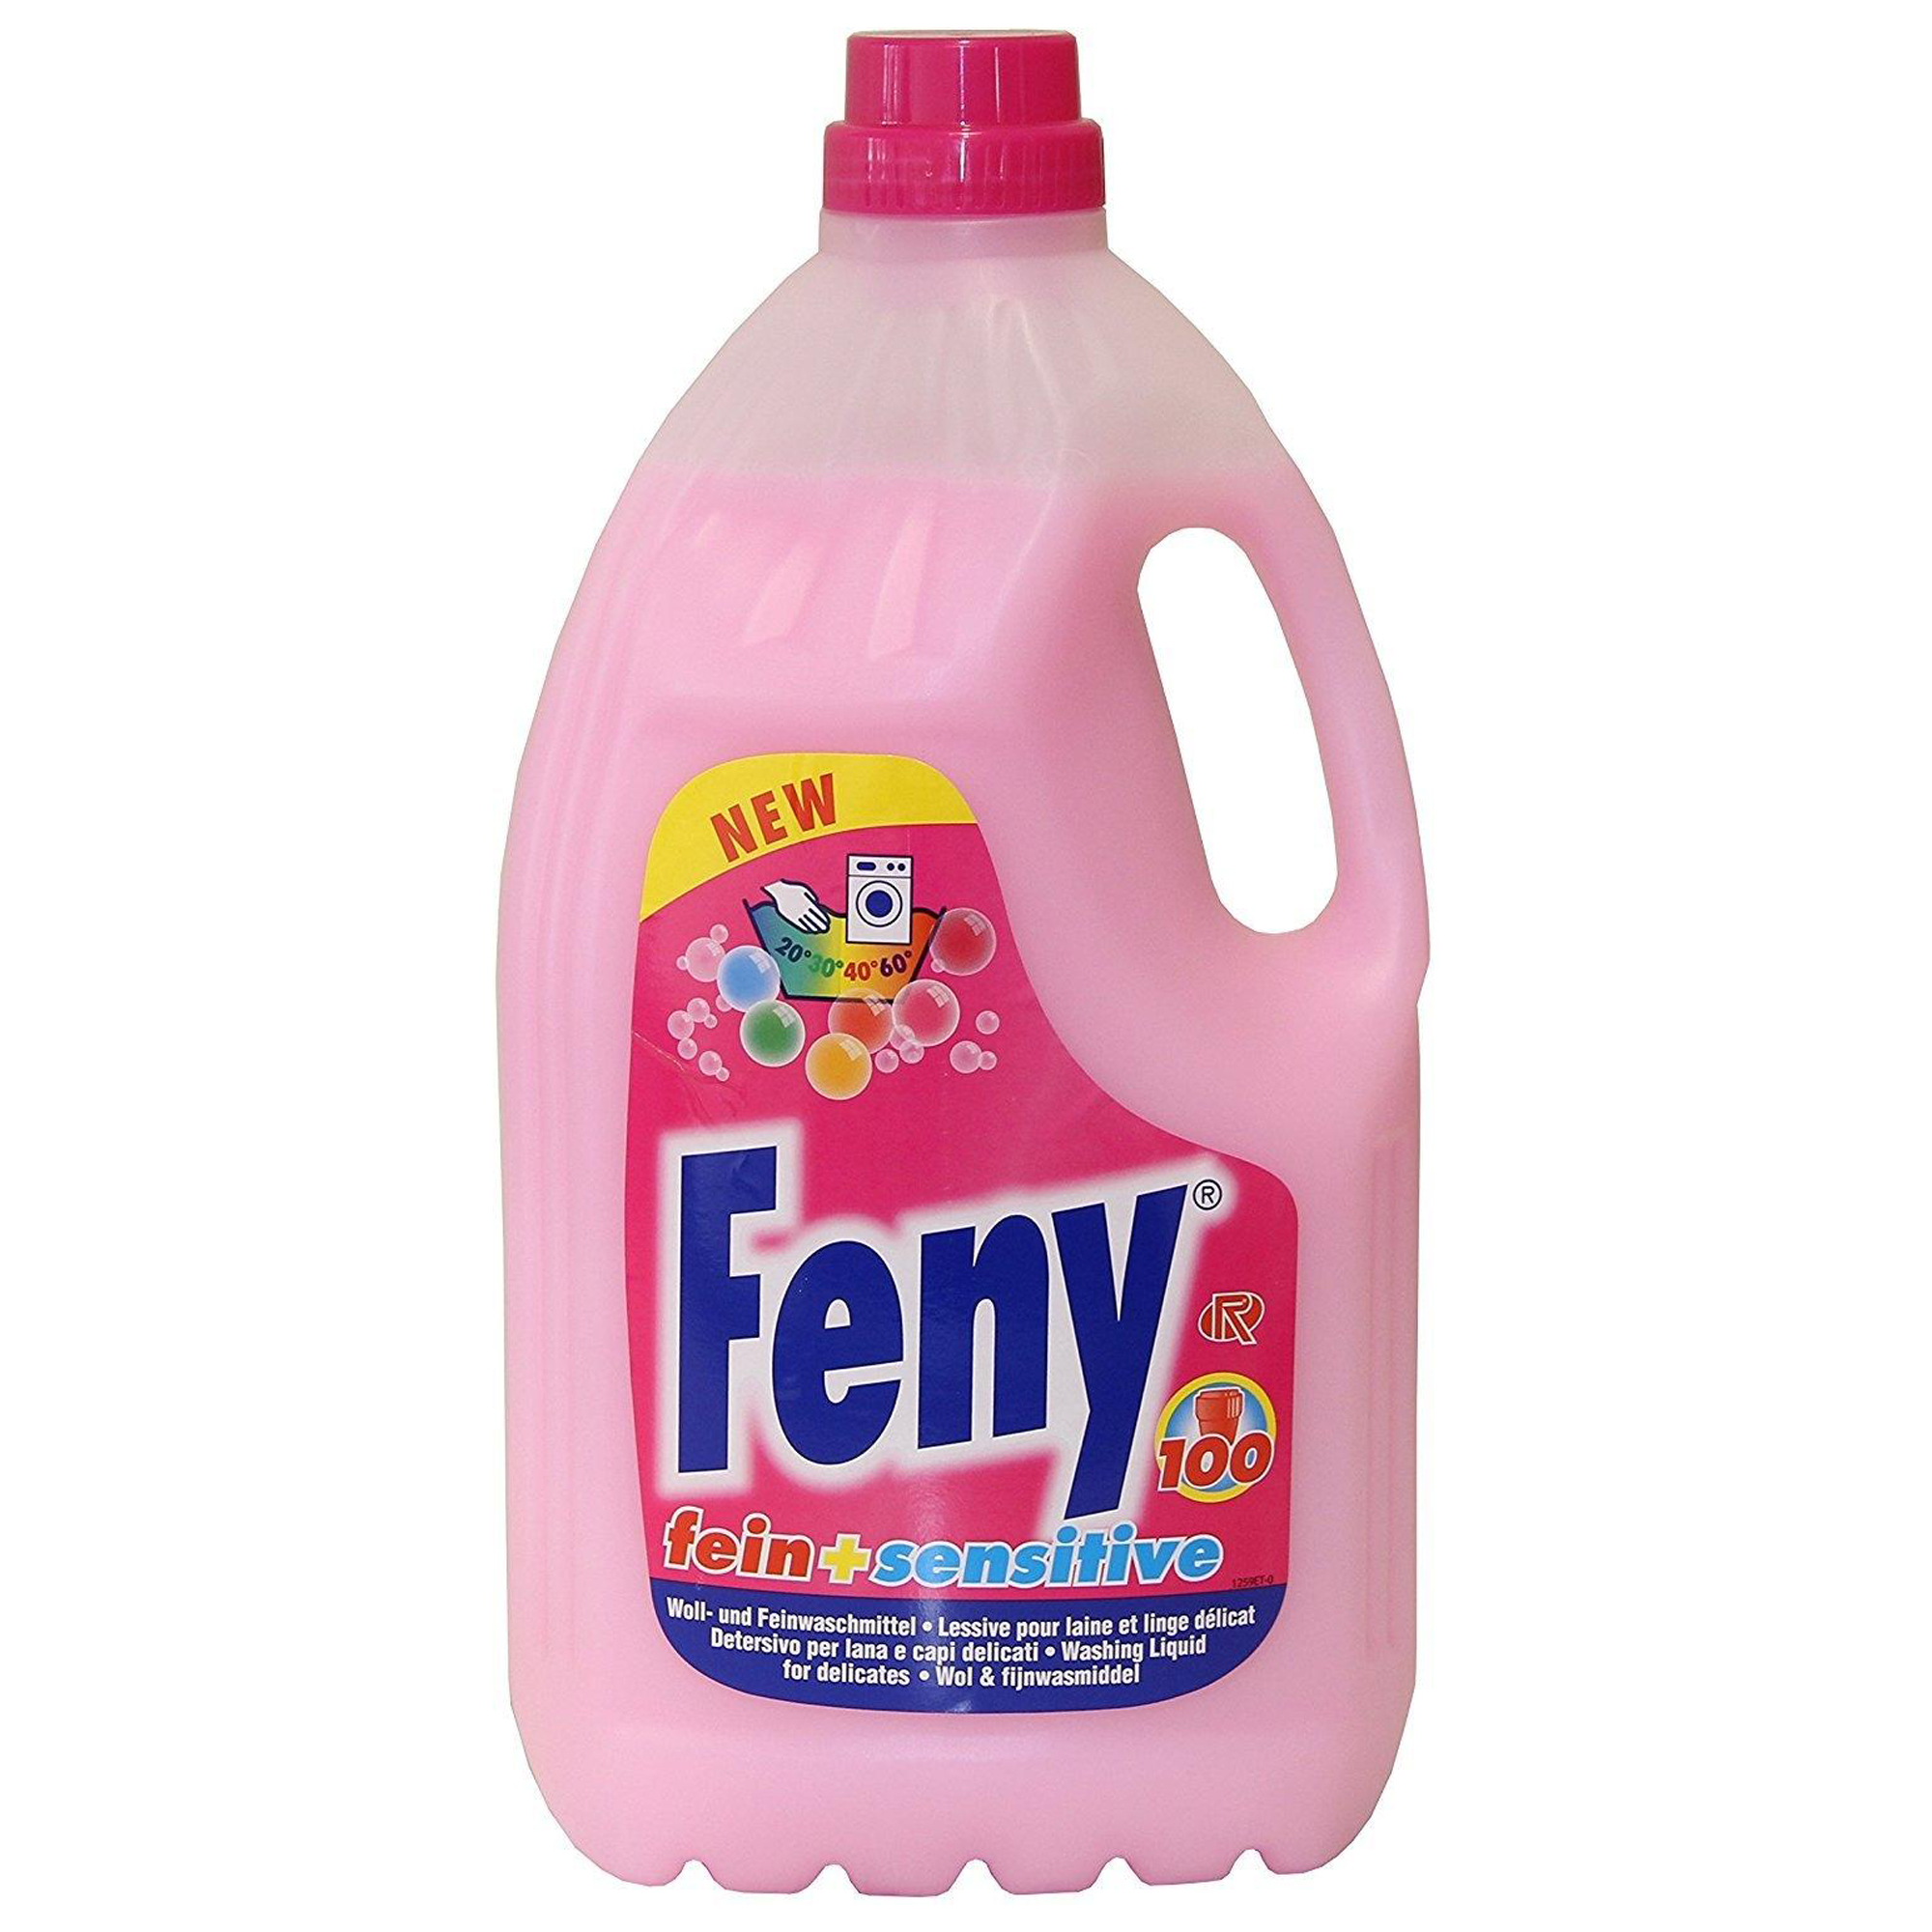 Rösch Feny fein + sensitive Feinwaschmittel 4 Liter Flasche 070120_1